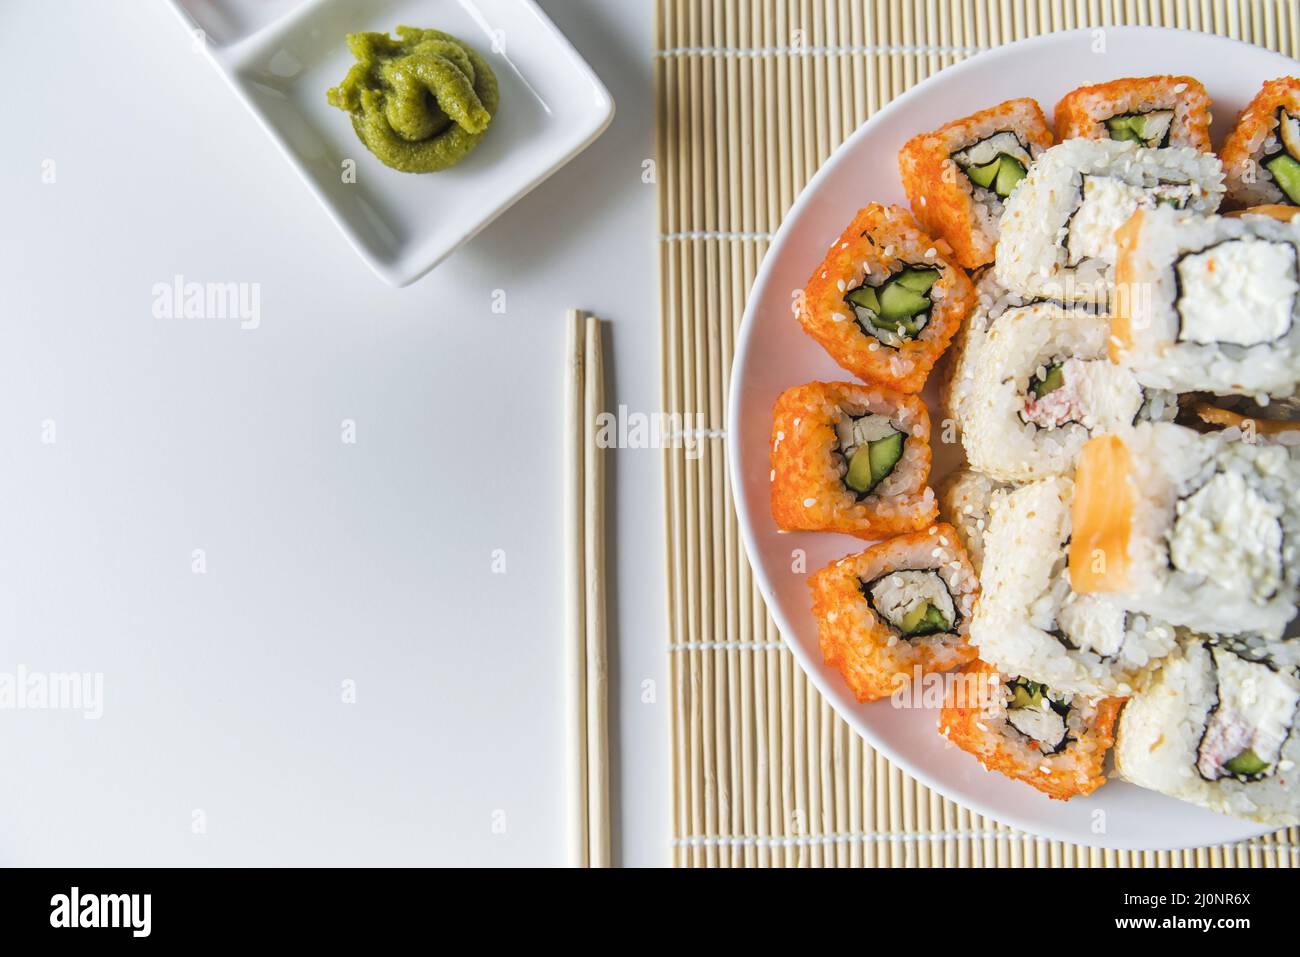 Vista superior plato de sushi con wasabi. Alta calidad y resolución Hermoso concepto fotográfico Foto de stock